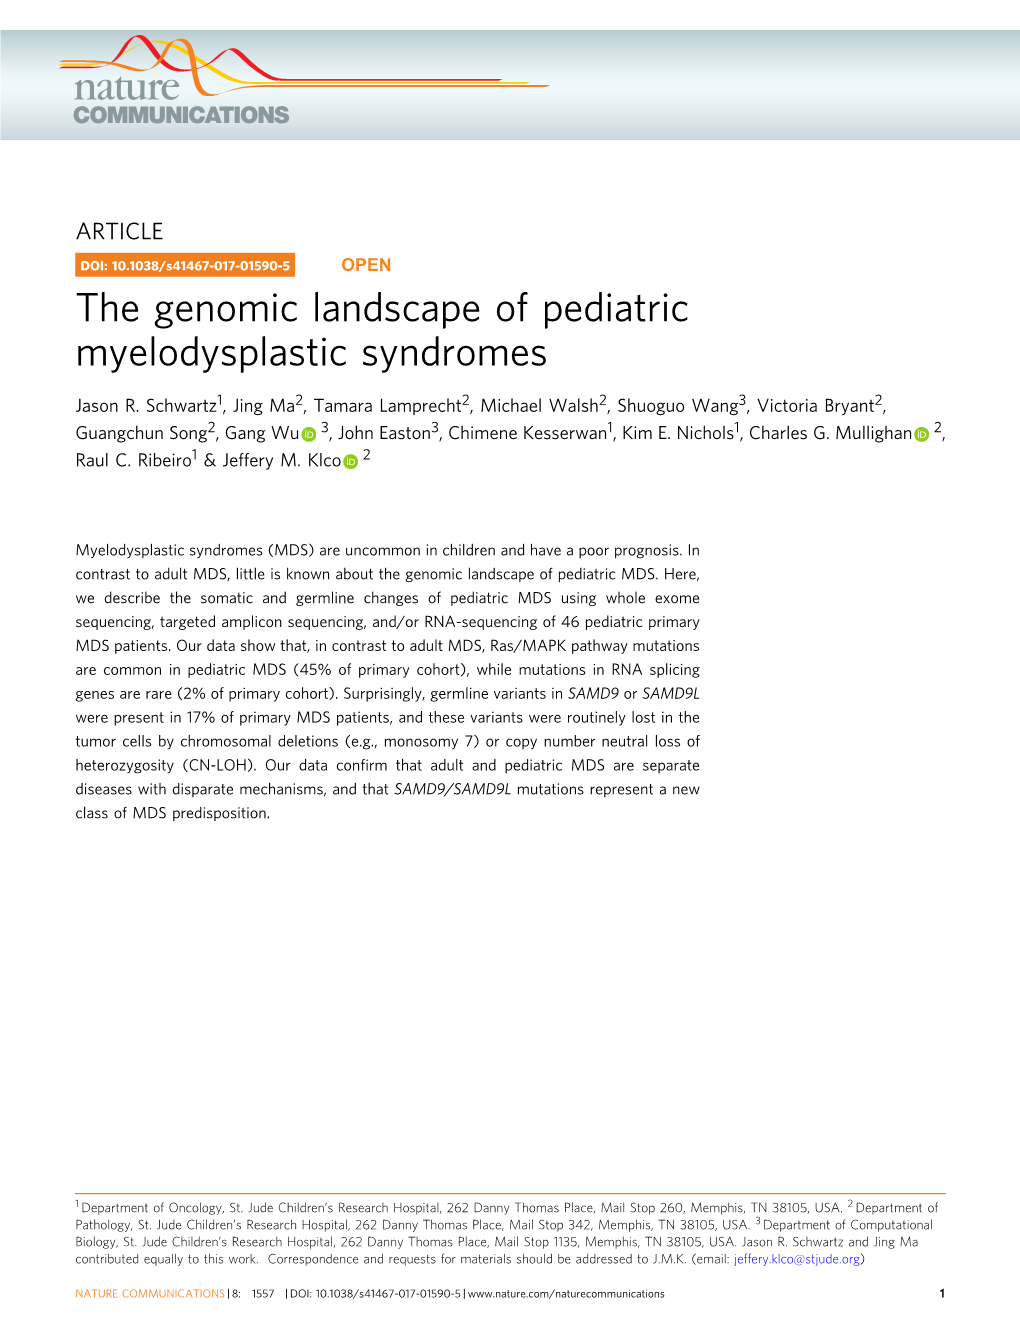 The Genomic Landscape of Pediatric Myelodysplastic Syndromes